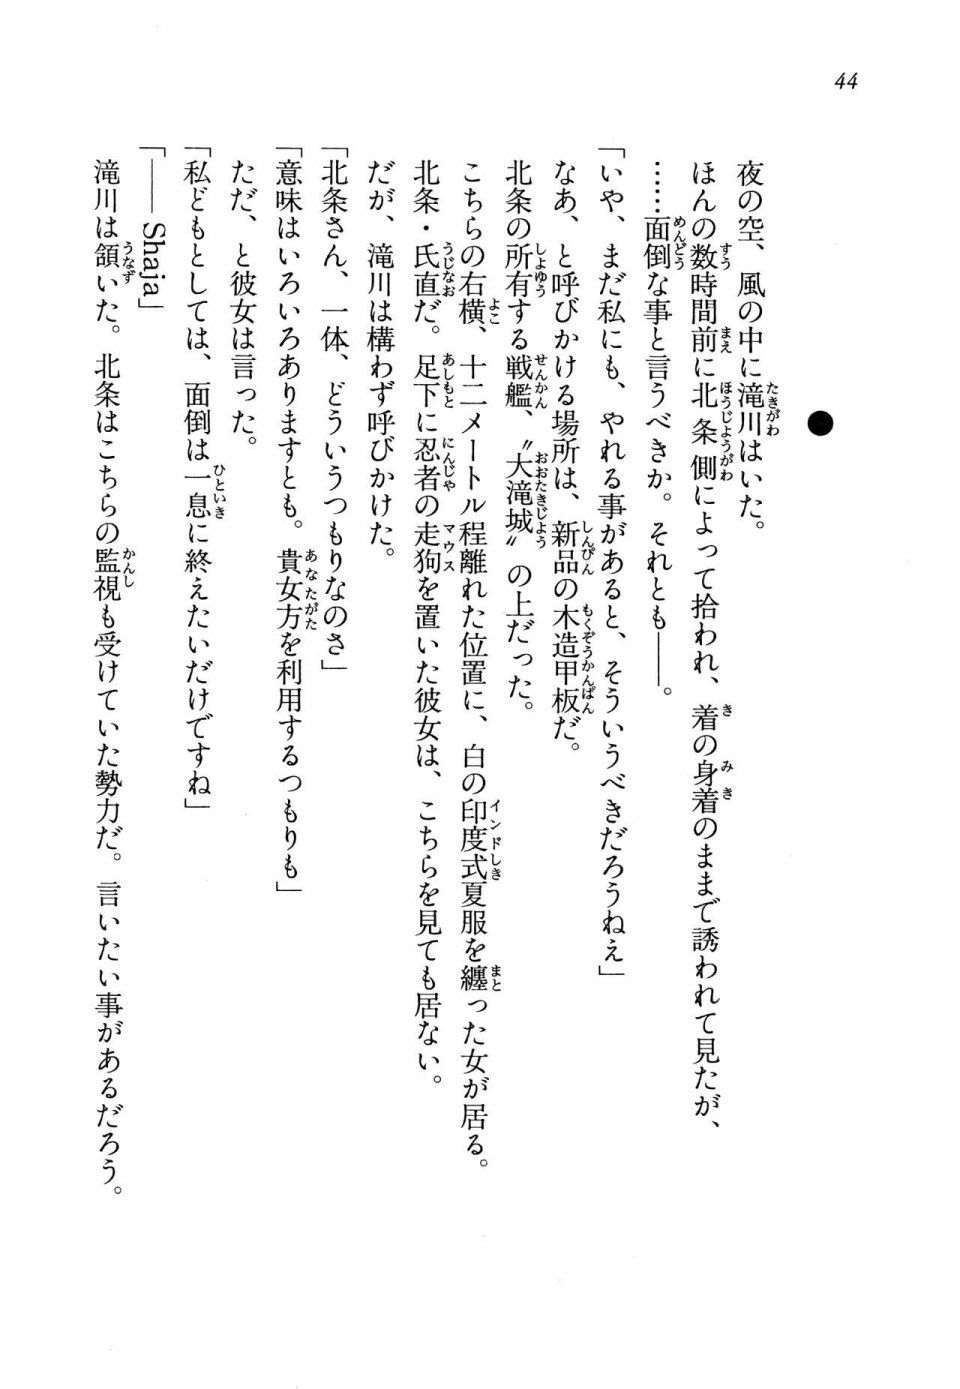 Kyoukai Senjou no Horizon LN Vol 13(6A) - Photo #44